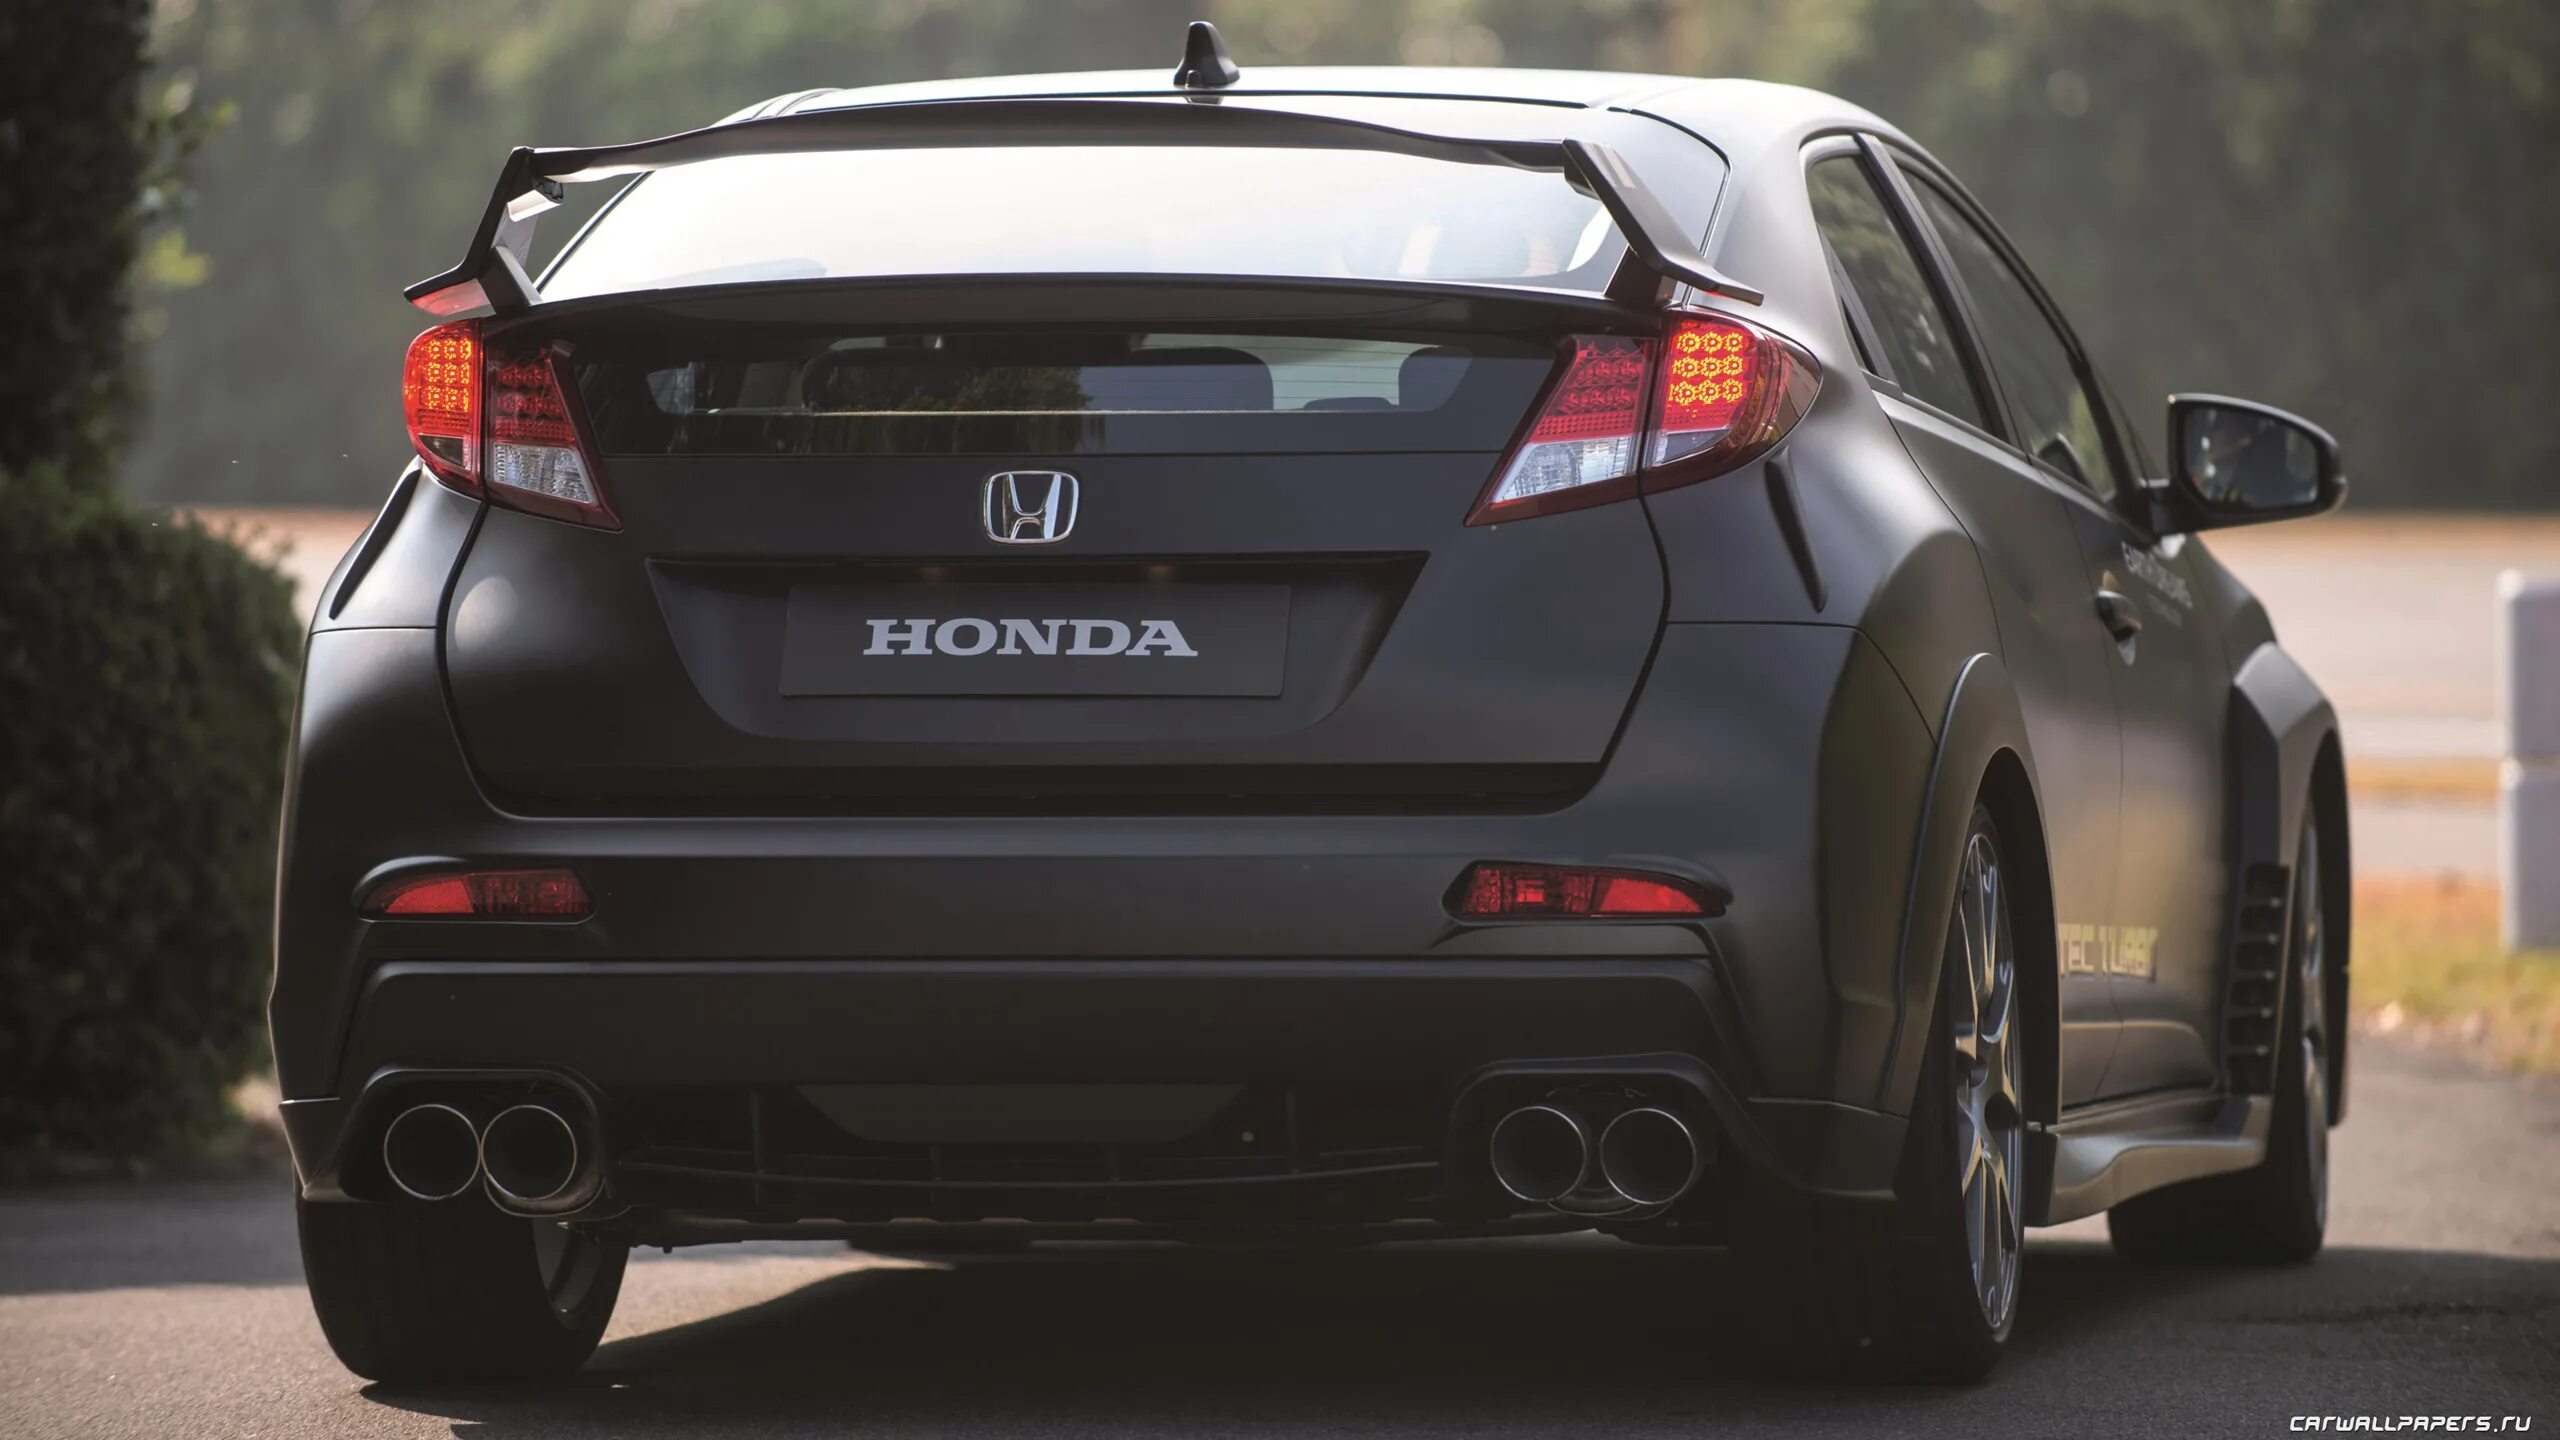 Honda civic drive